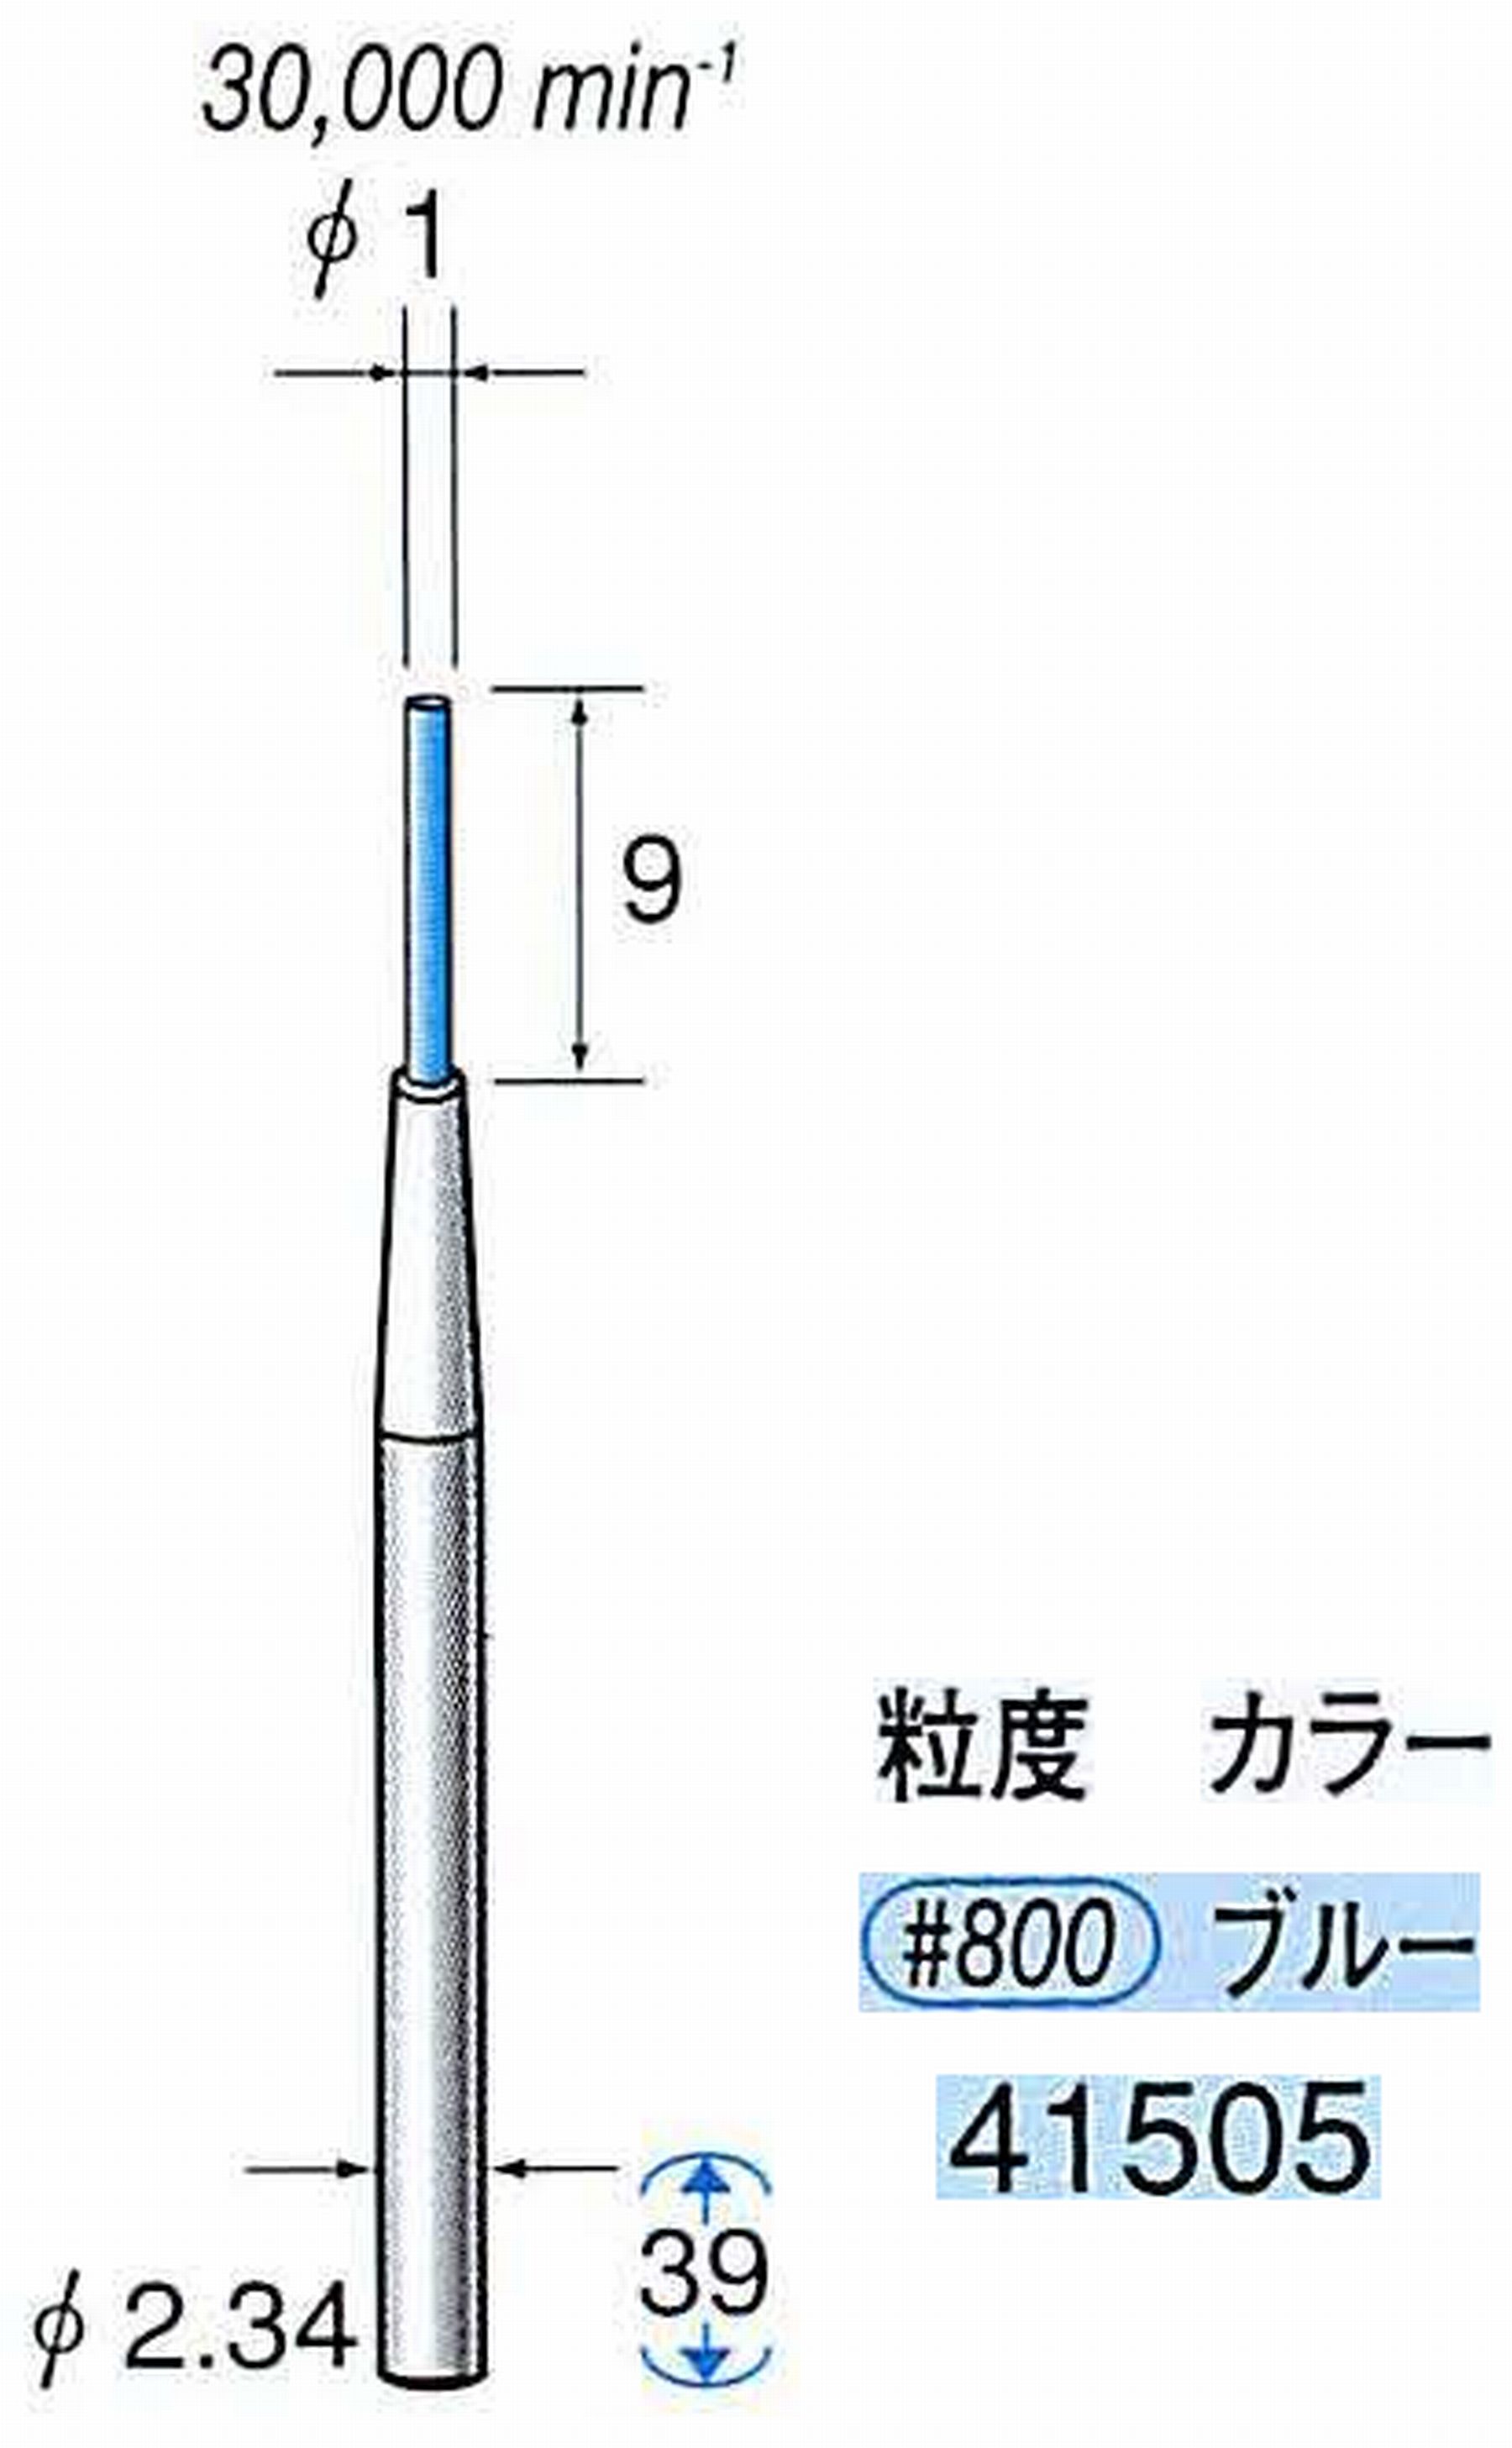 ナカニシ/NAKANISHI セラファイバー精密軸付砥石(カラー ブルー) 軸径(シャンク) φ2.34mm 41505